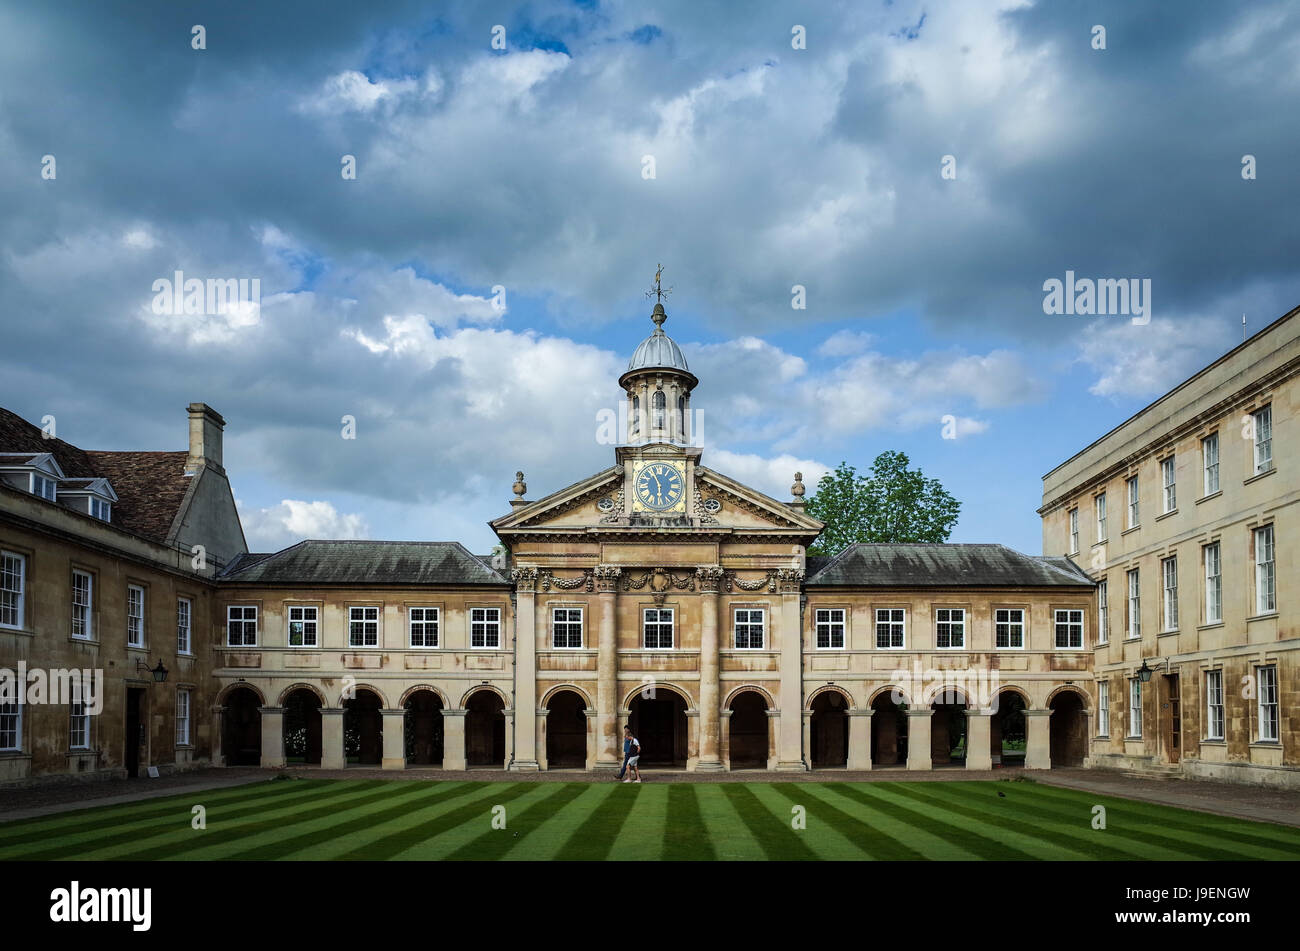 L'horloge et la Cour avant d'Emmanuel College, qui fait partie de l'Université de Cambridge, Royaume-Uni. Le collège a été fondé en 1584. Architecte : Wren. Banque D'Images